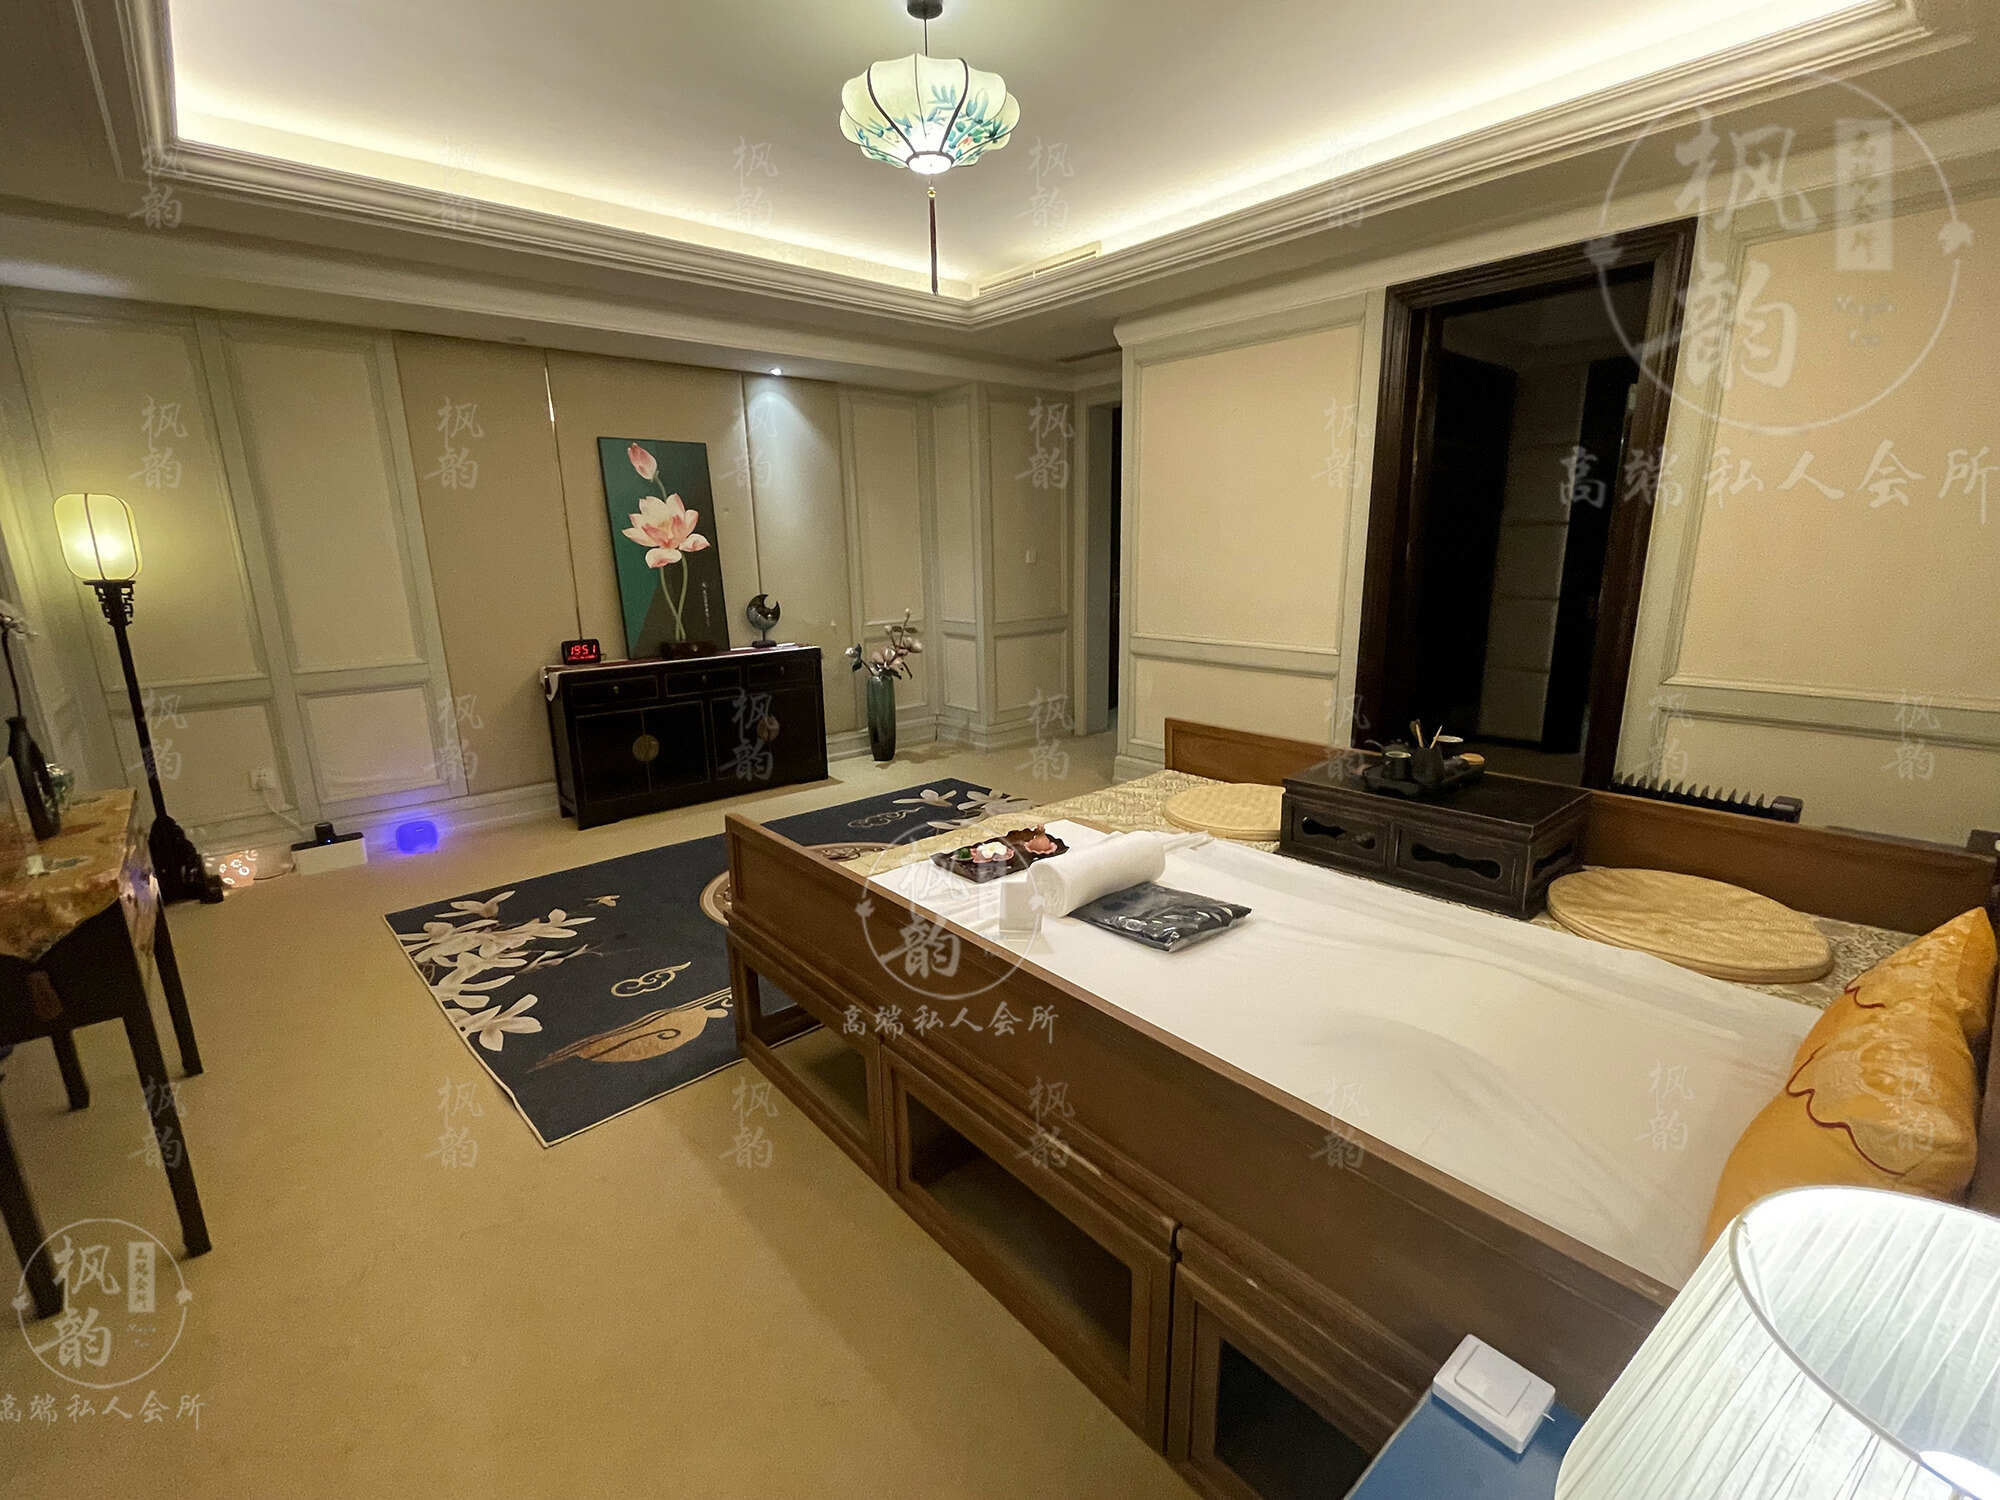 南阳天津渔阳鼓楼人气优选沐足会馆房间也很干净，舒适的spa体验